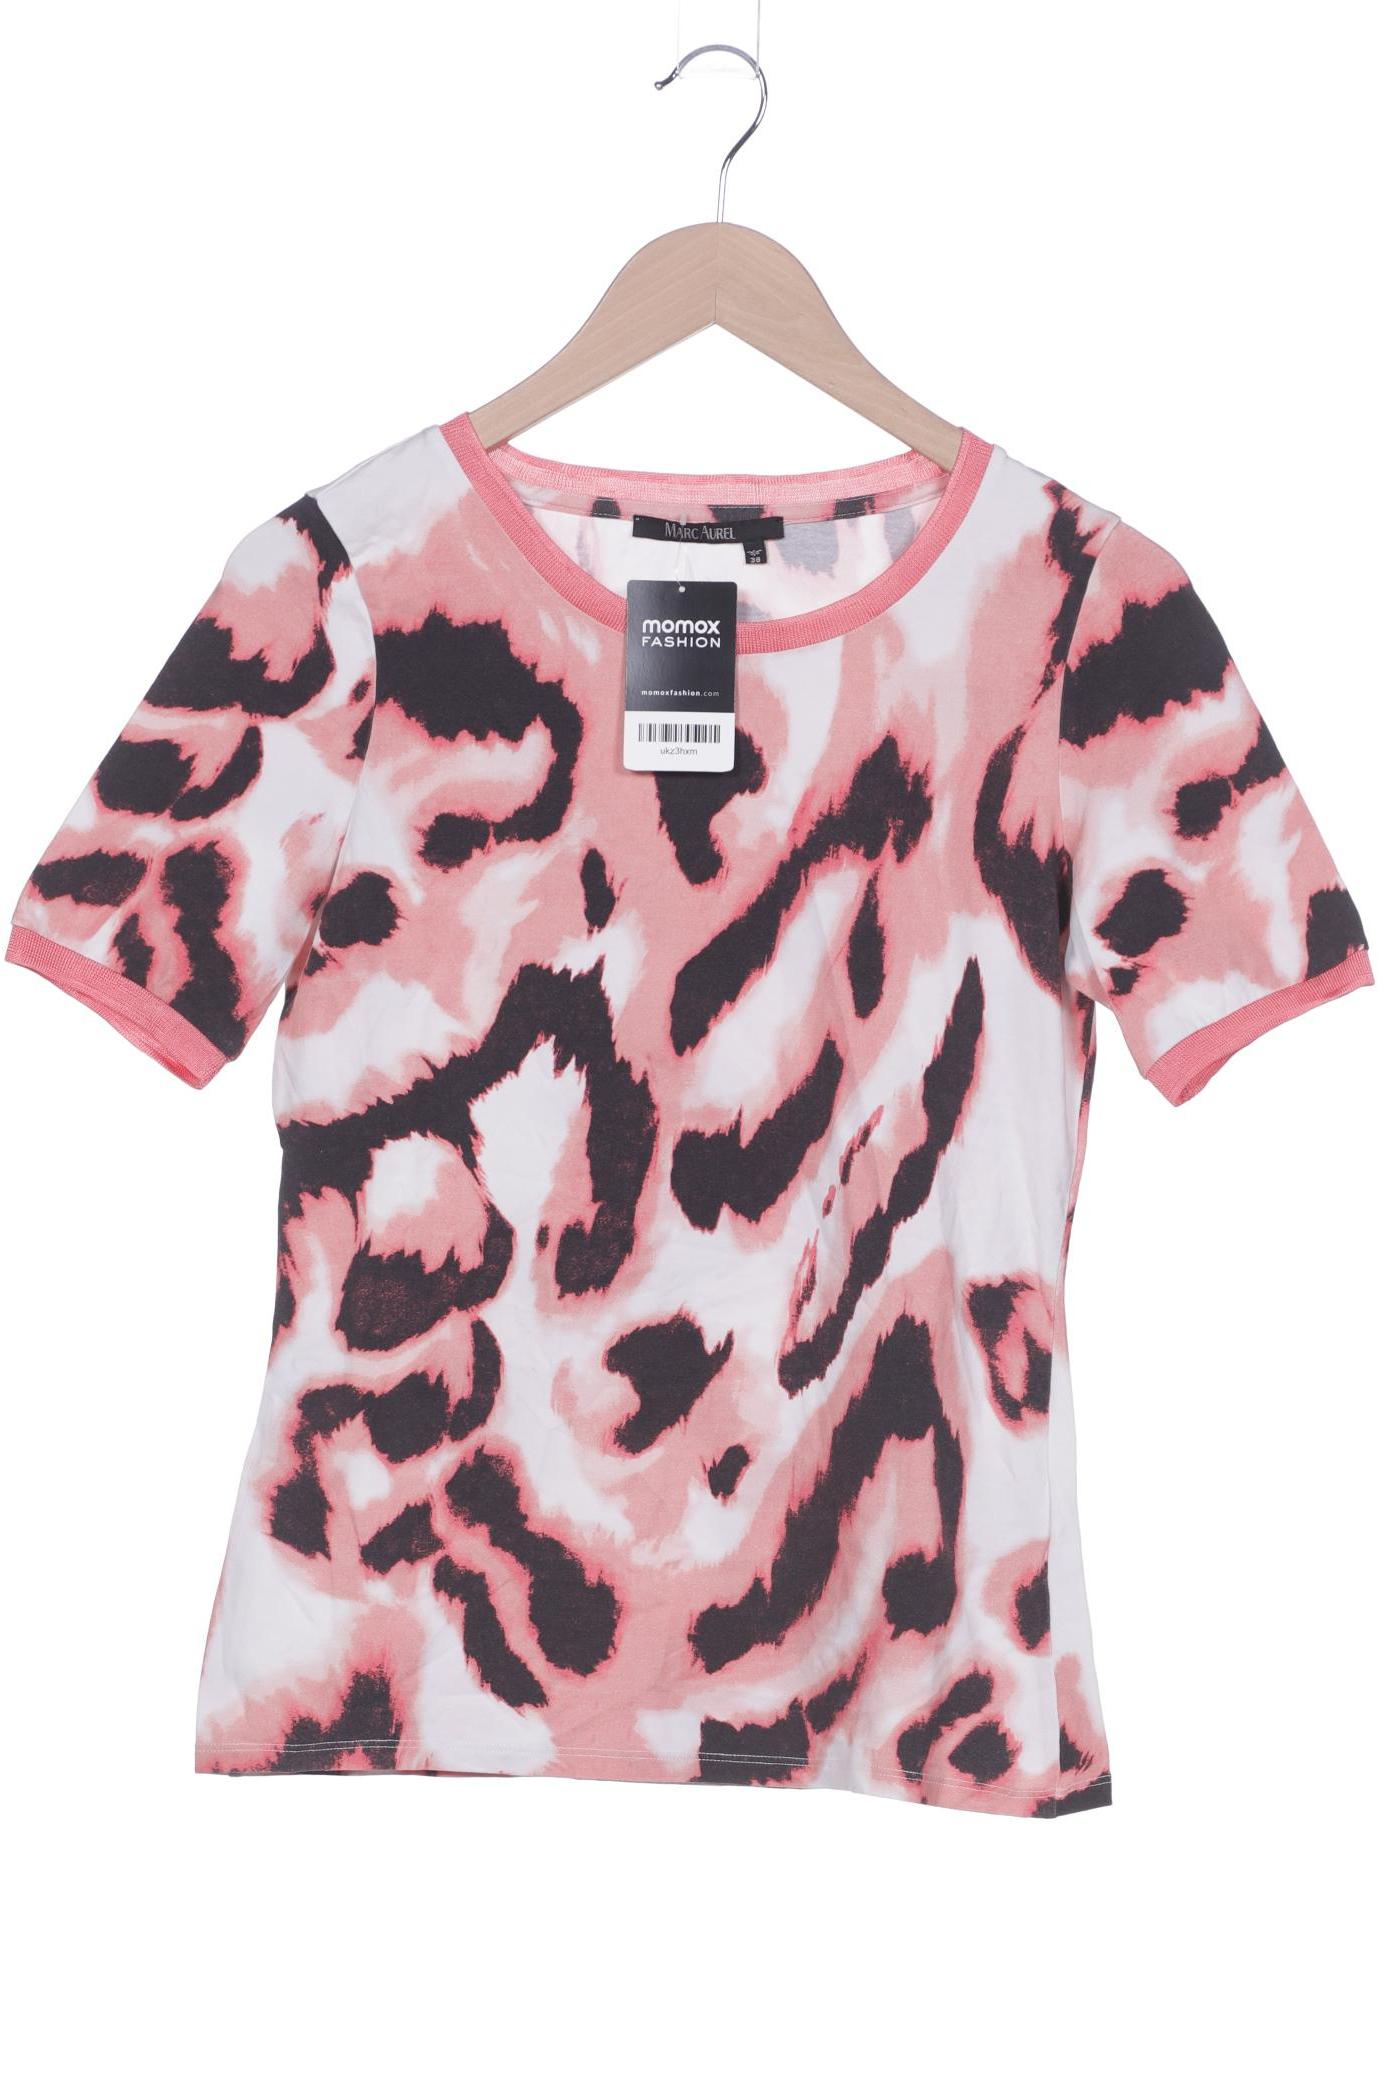 MARC AUREL Damen T-Shirt, pink von MARC AUREL